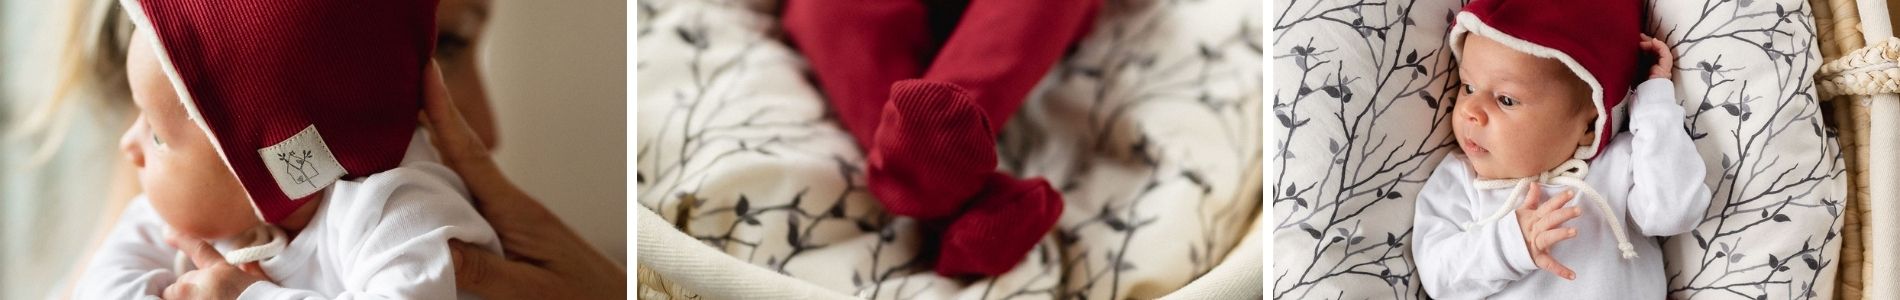 Polodupačky pro miminka - český výrobce kvalitního kojeneckého oblečení